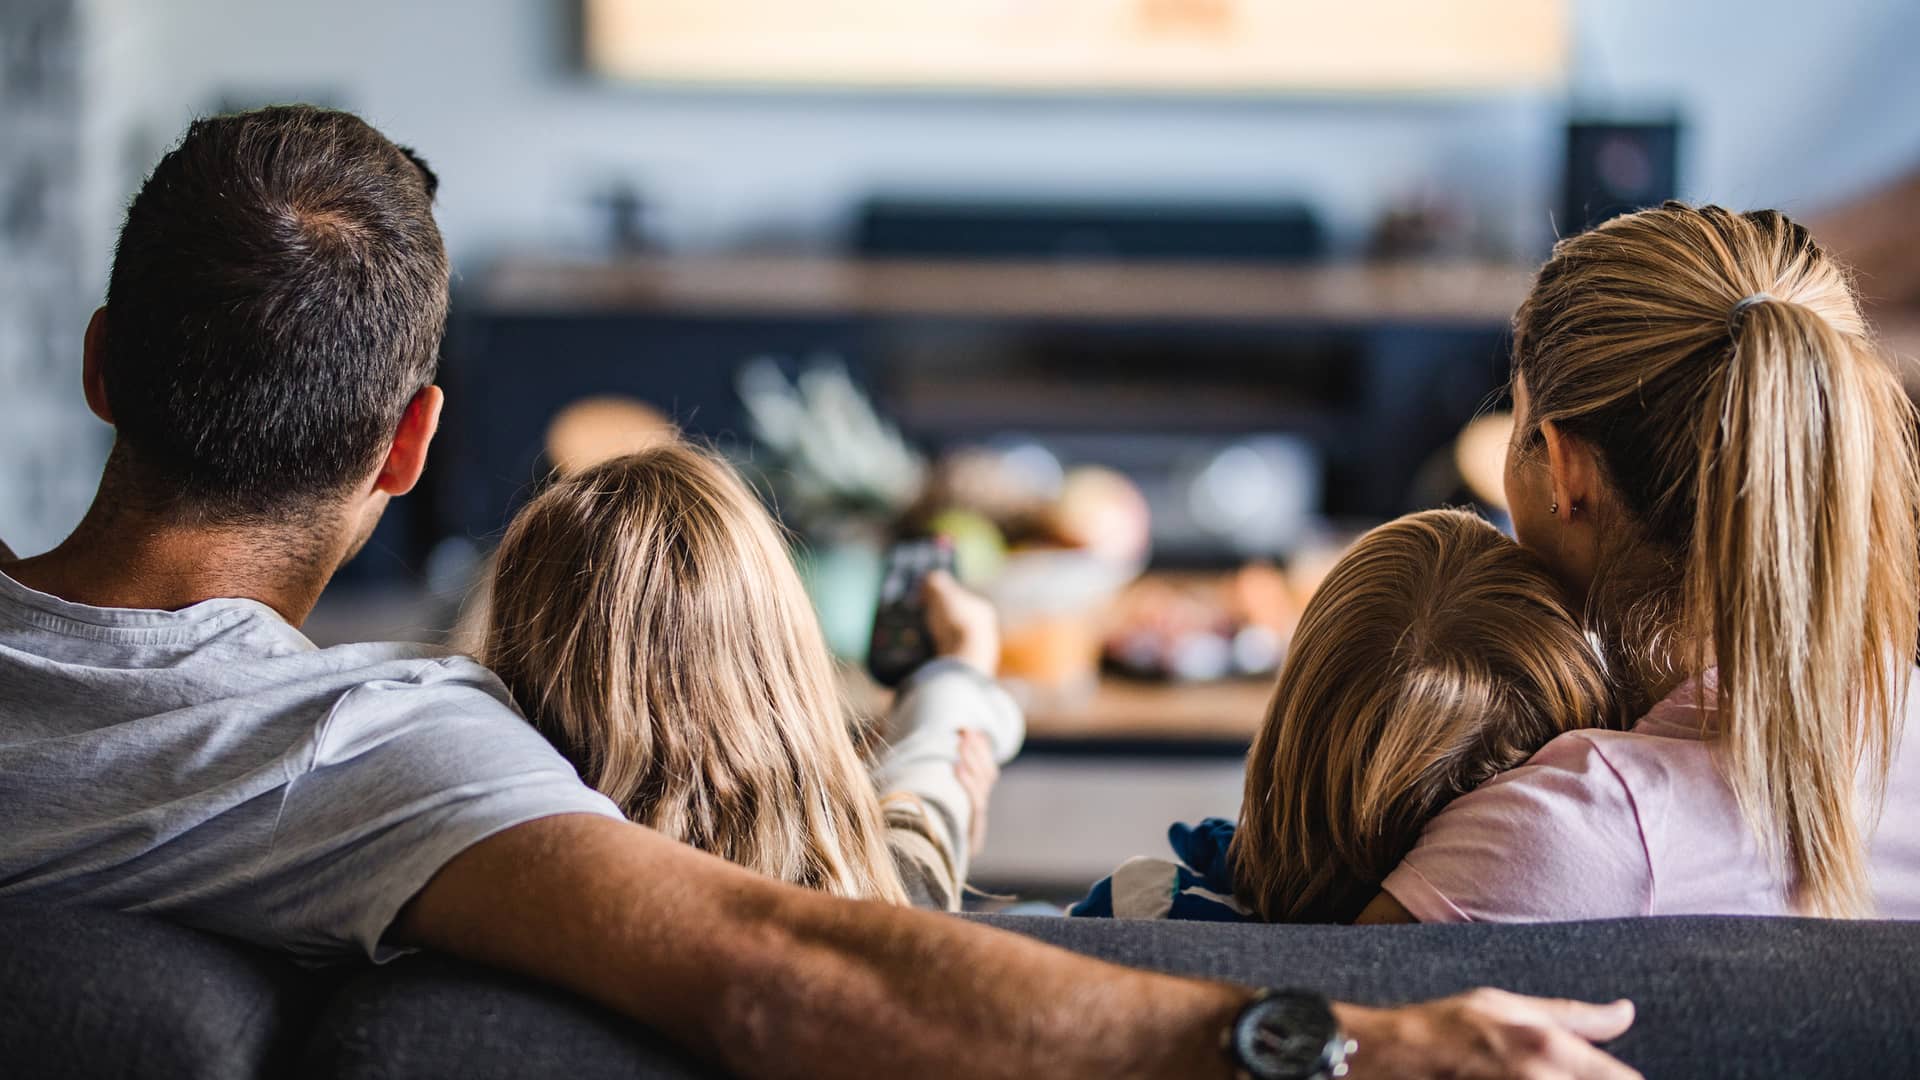 Vista trasera de una familia viendo la televisión en el sofá en casa simboliza tarifas móvil internet tv familia